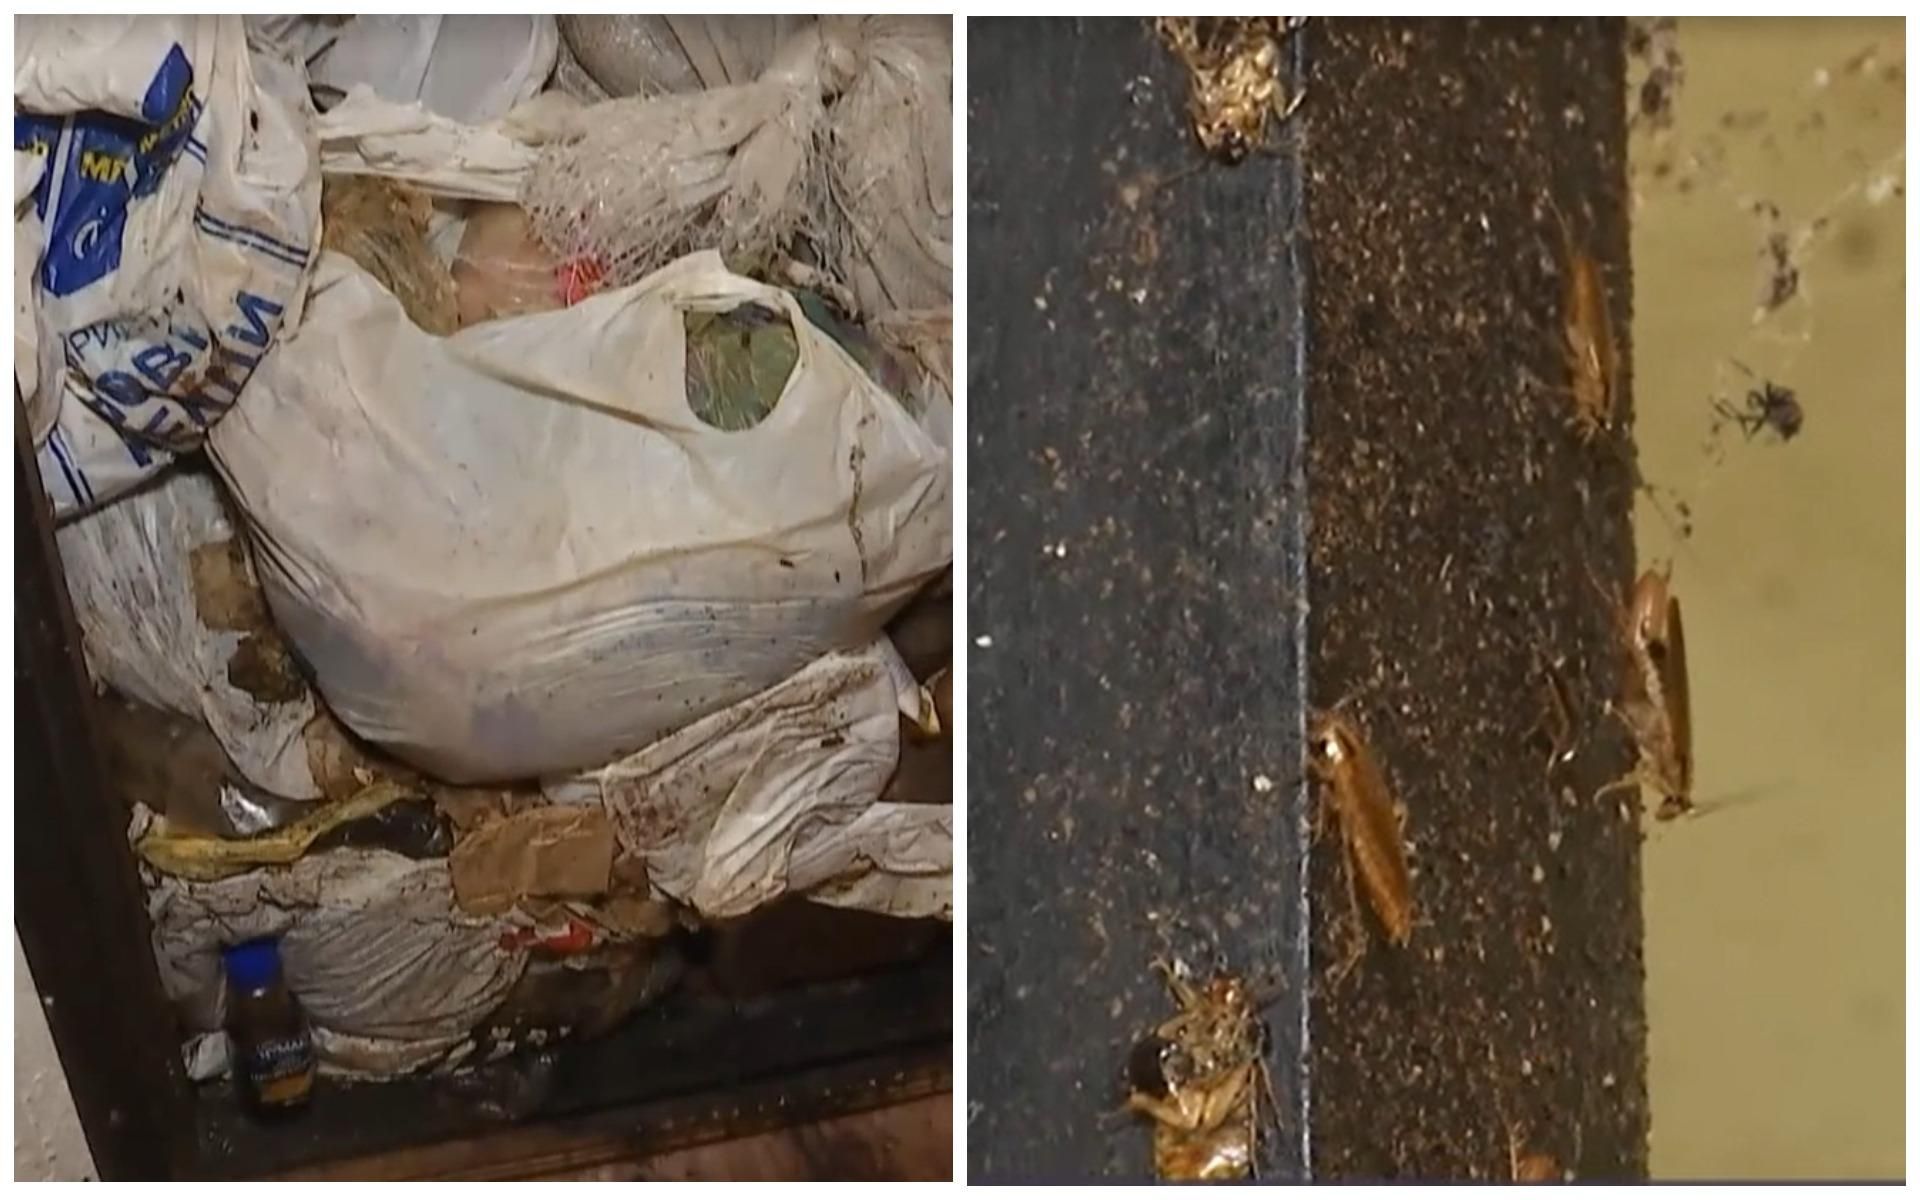 "Соседский террор": в Киеве женщина собирает мусор с тараканами и выбрасывает его в окно